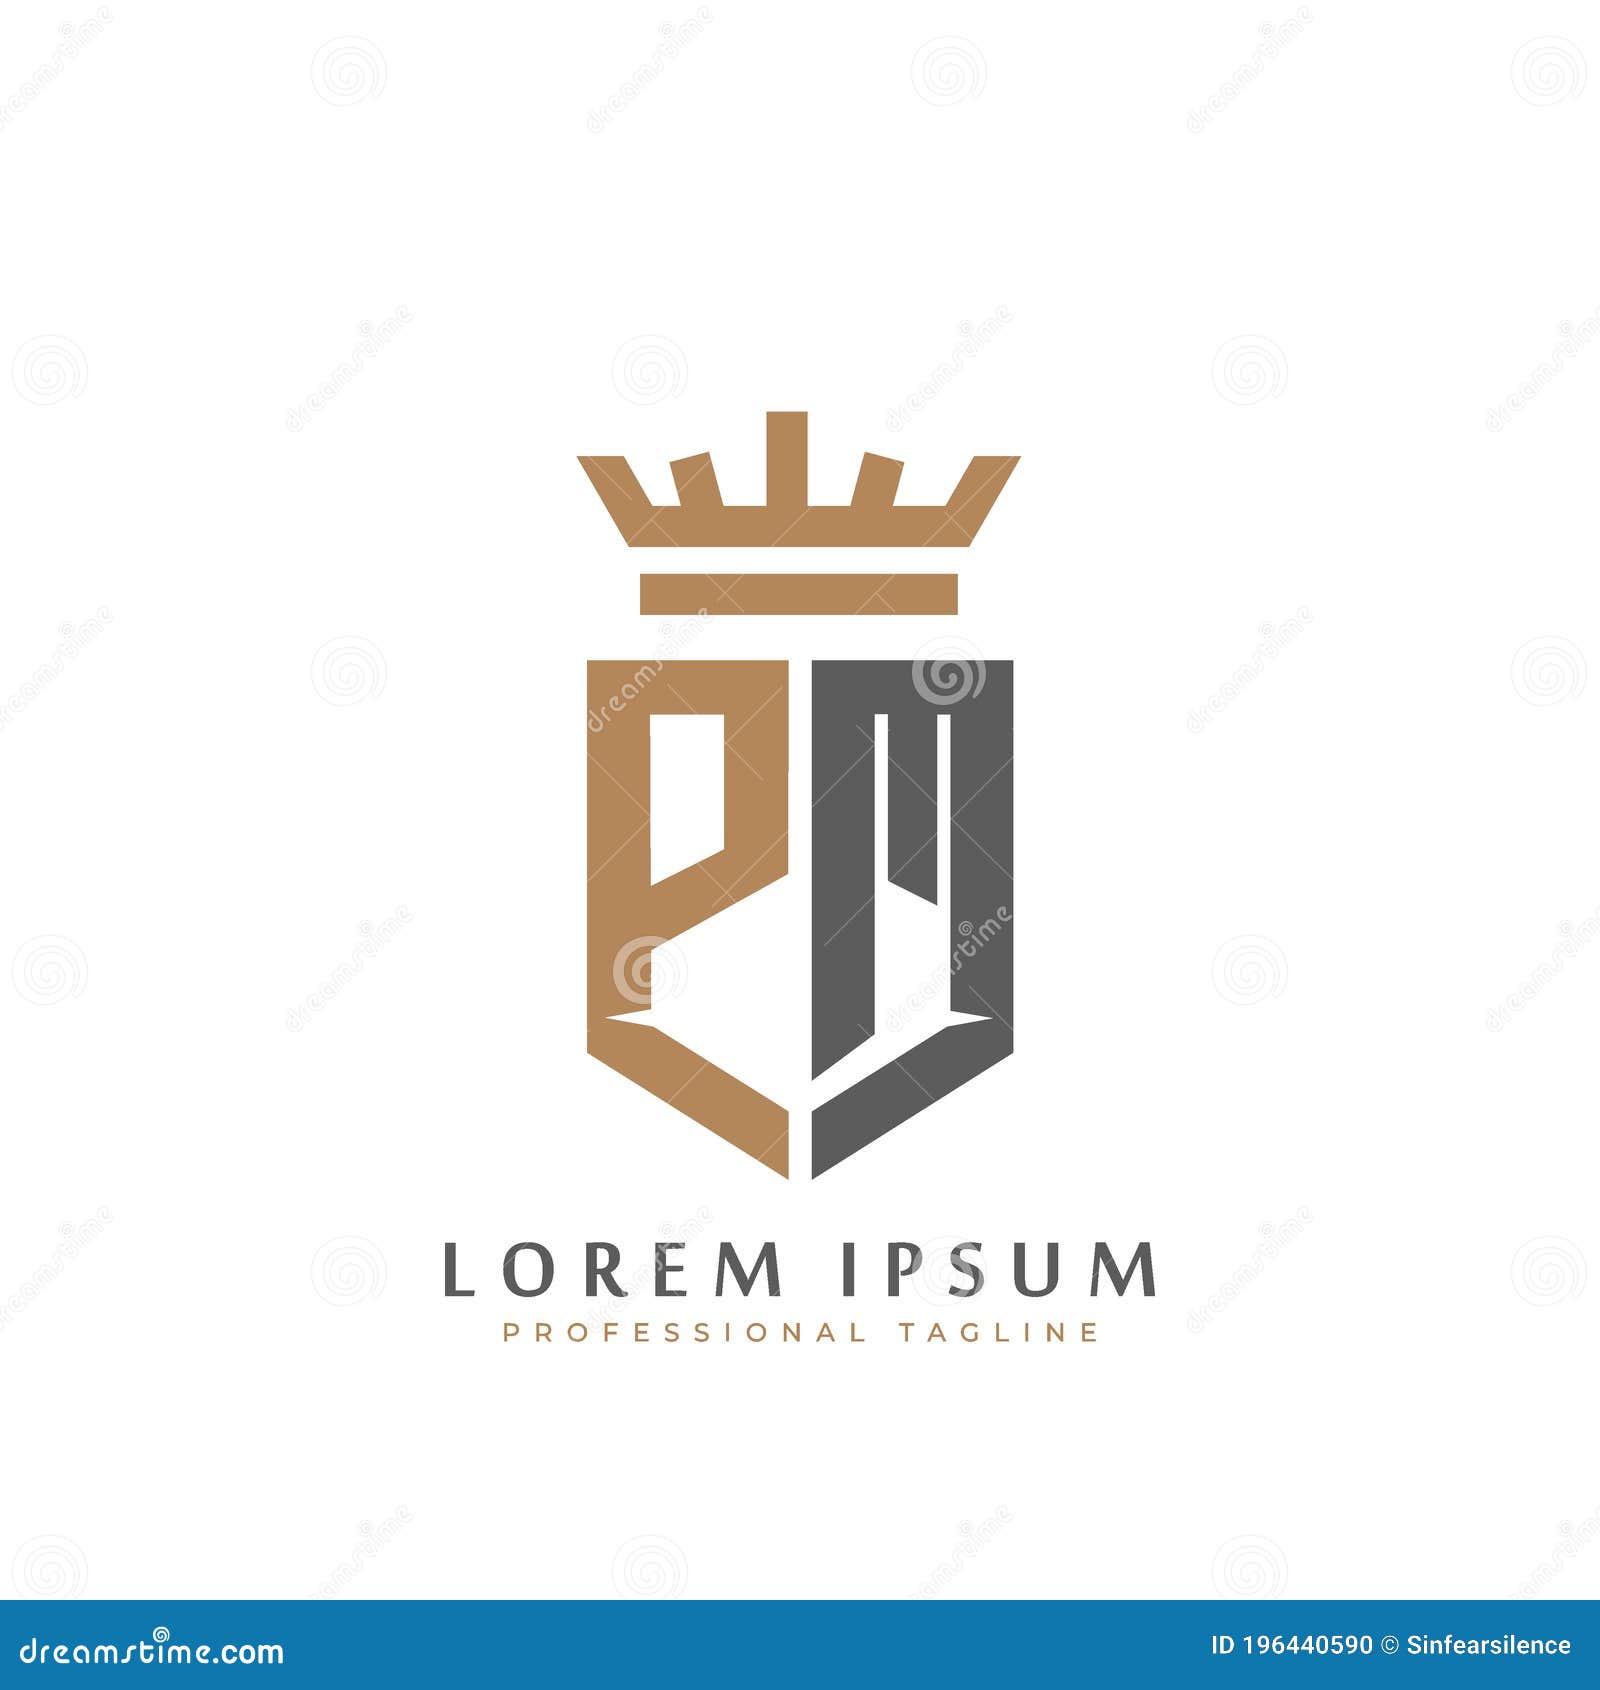 Premium Vector  Letter pm monogram logo design